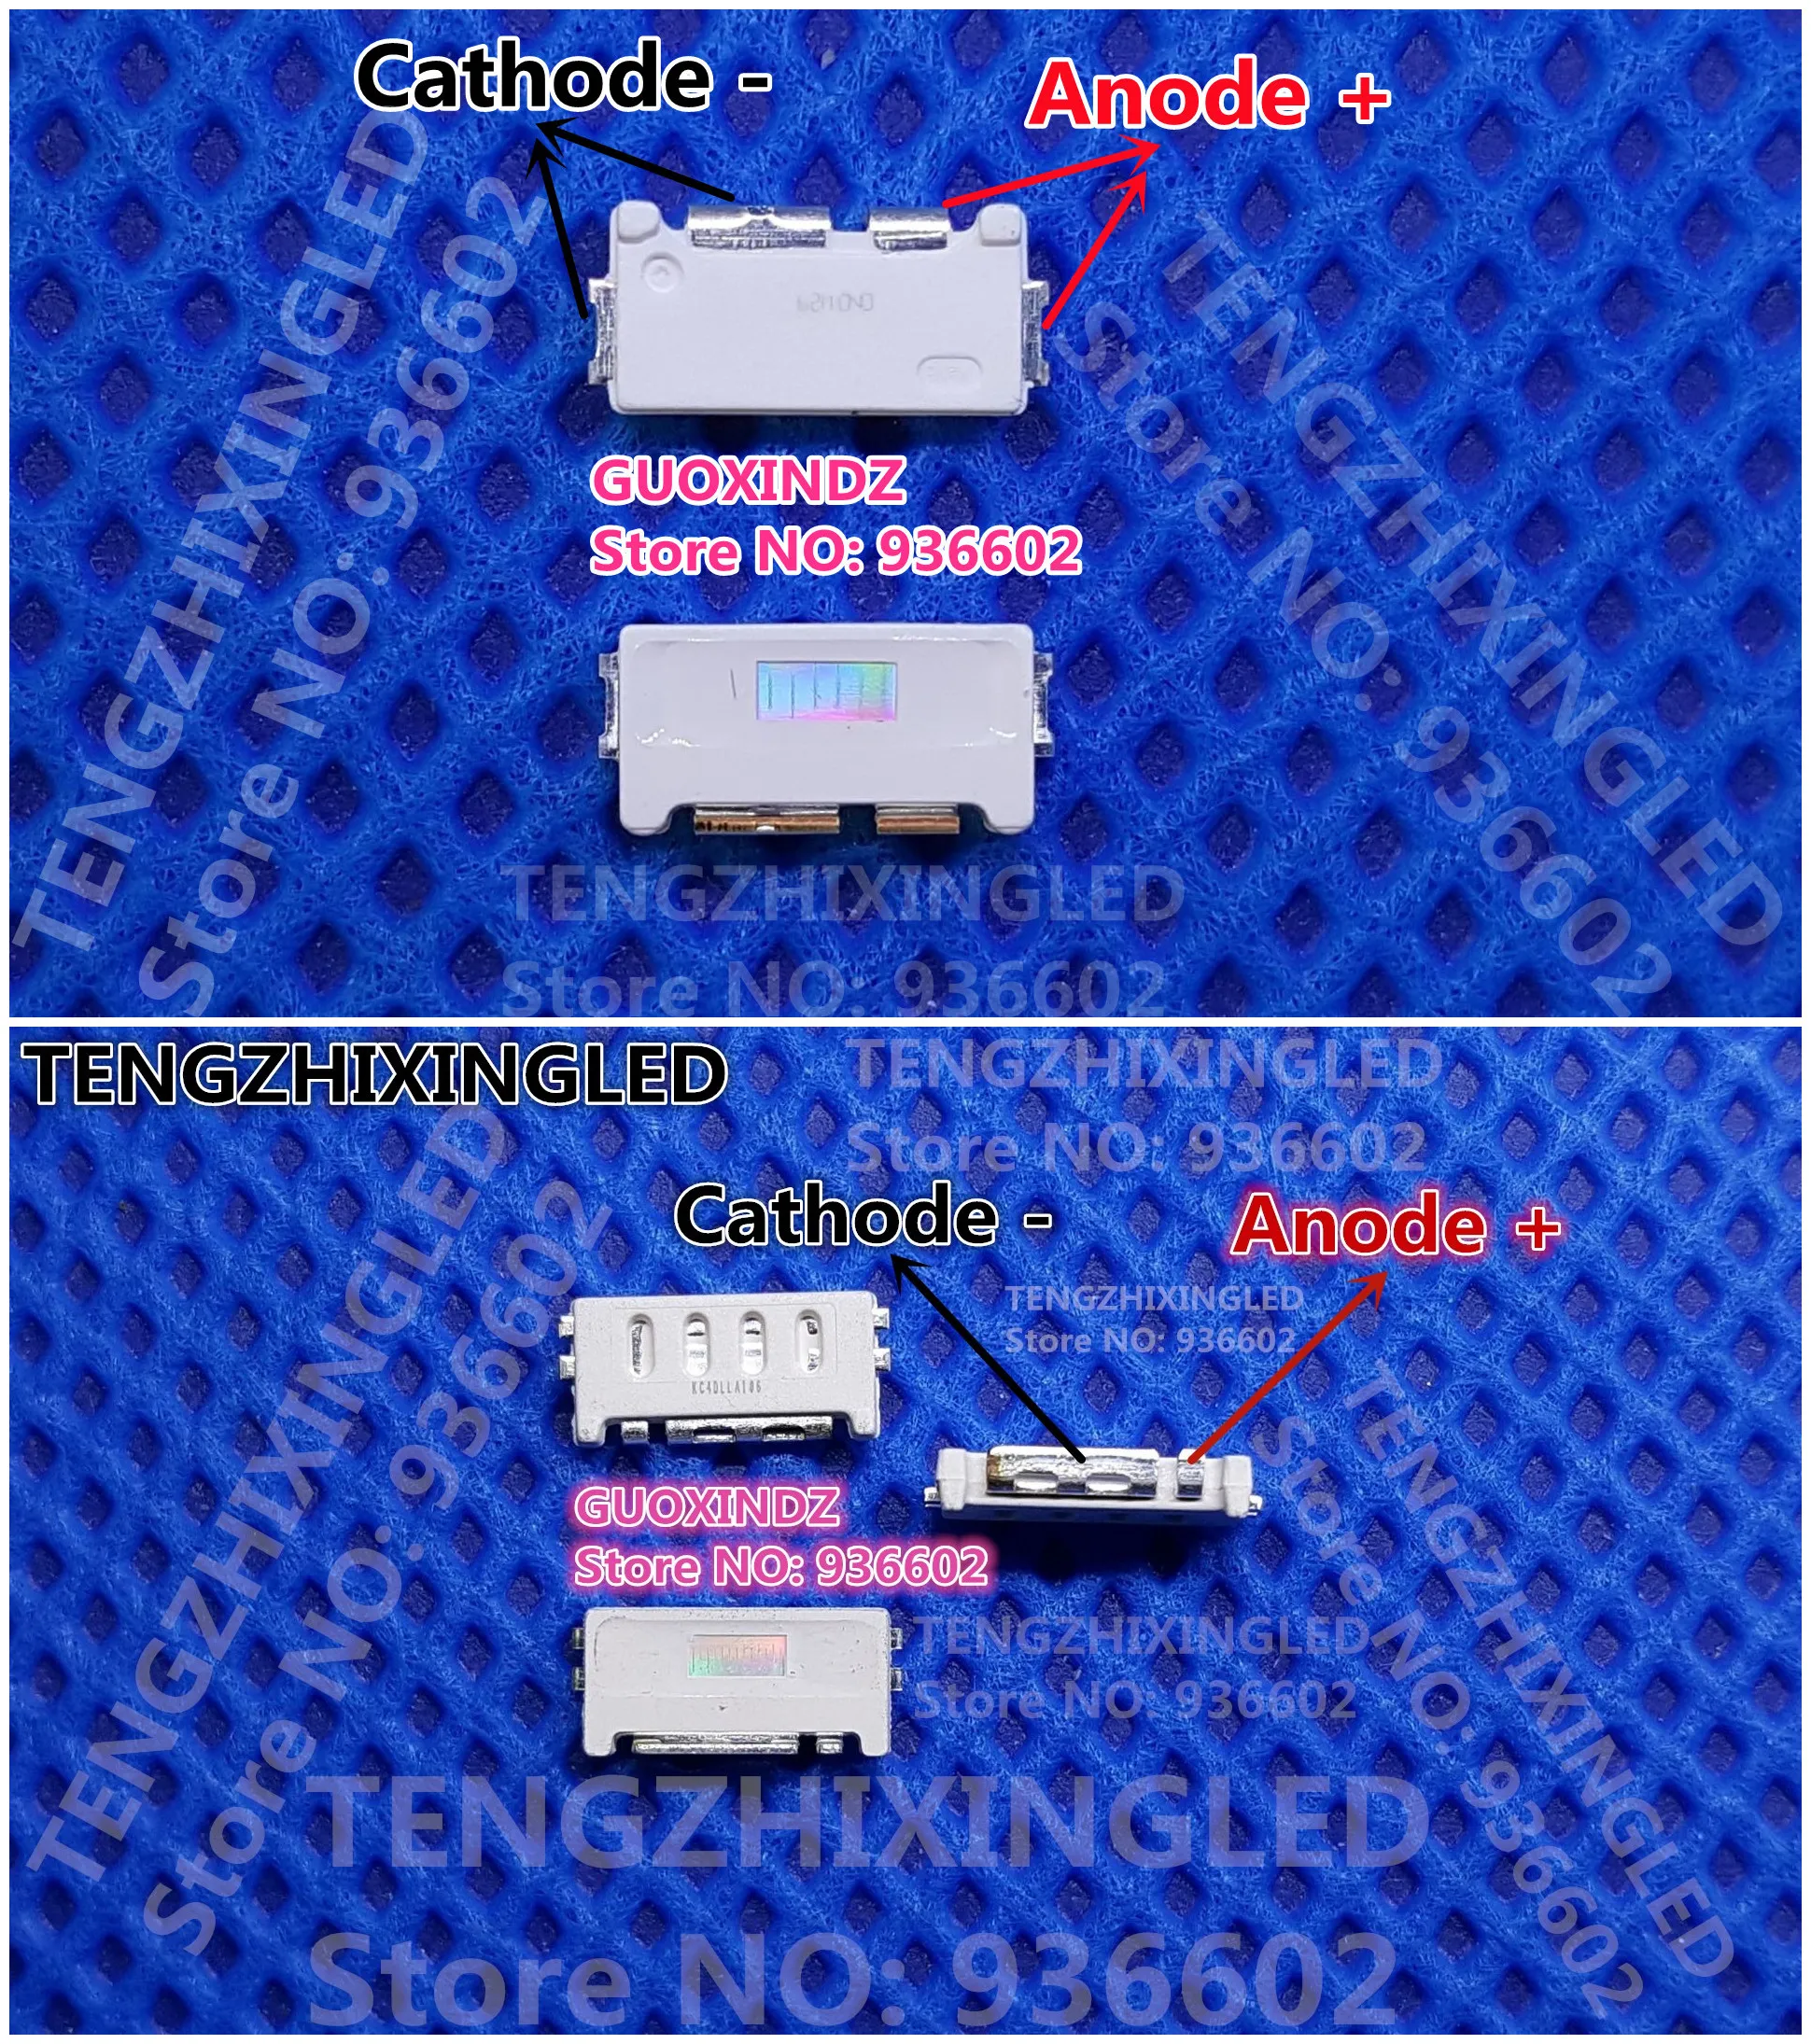 Фото 500 шт. для применения в подсветке квантовых точек ТВ SAMSUNG светодиодов серии Edge 1W 3V 7032 BLUE PKG.